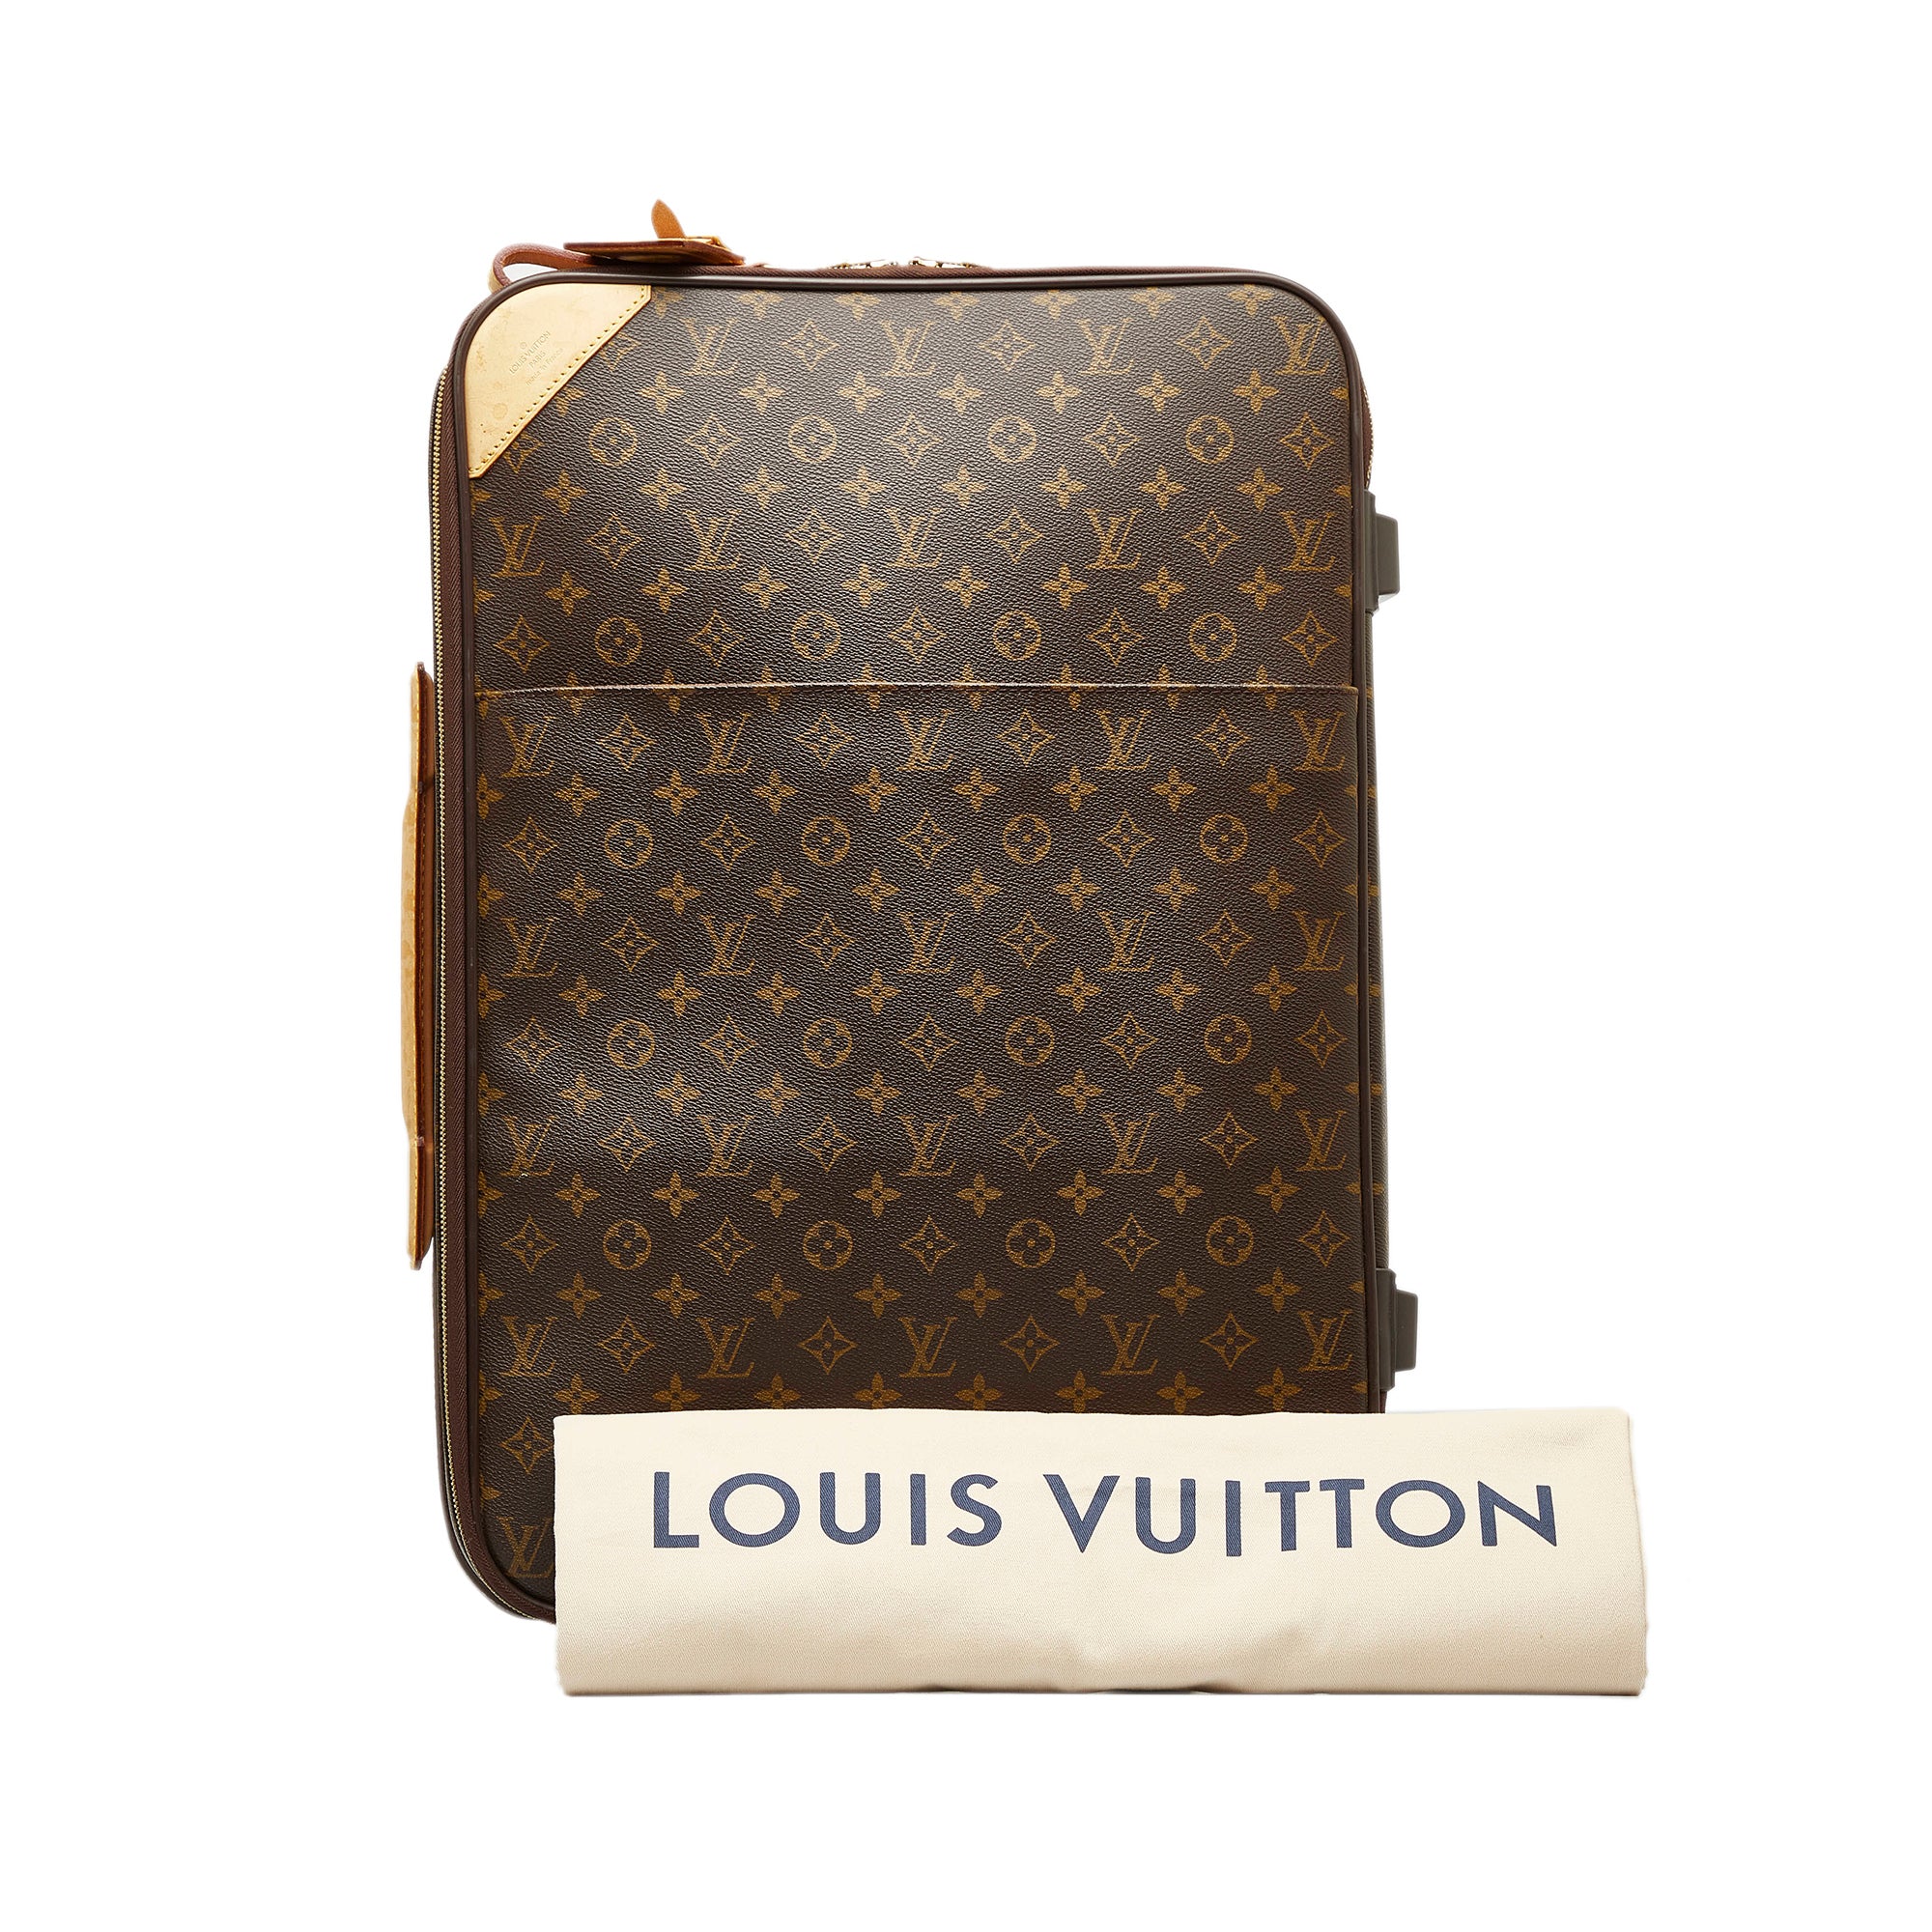 Louis Vuitton Pegase 55 Review 